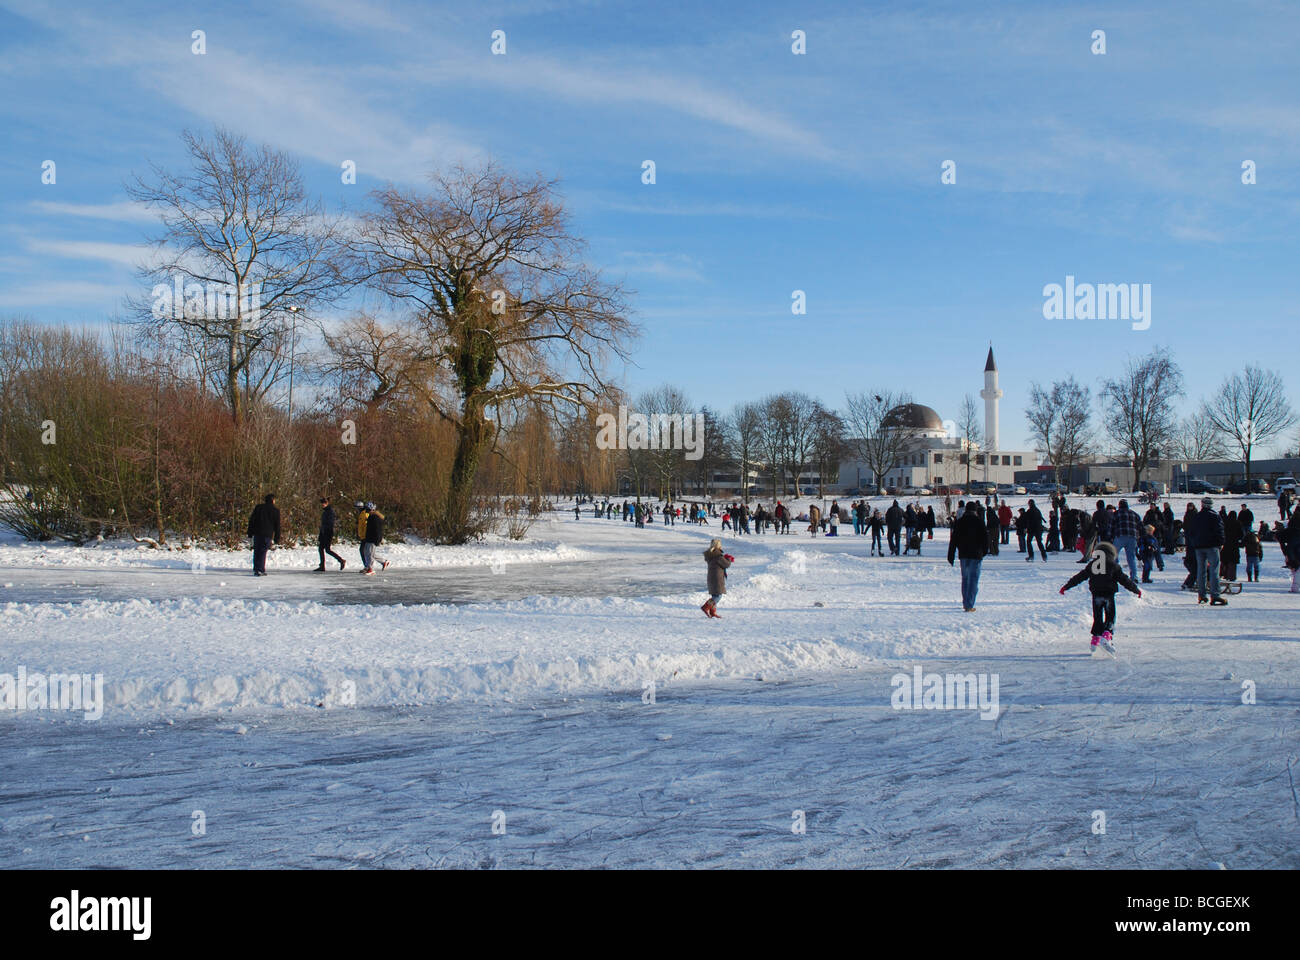 Eislaufen auf dem entfernten Teich in Roermond Limburg Niederlande  Stockfotografie - Alamy